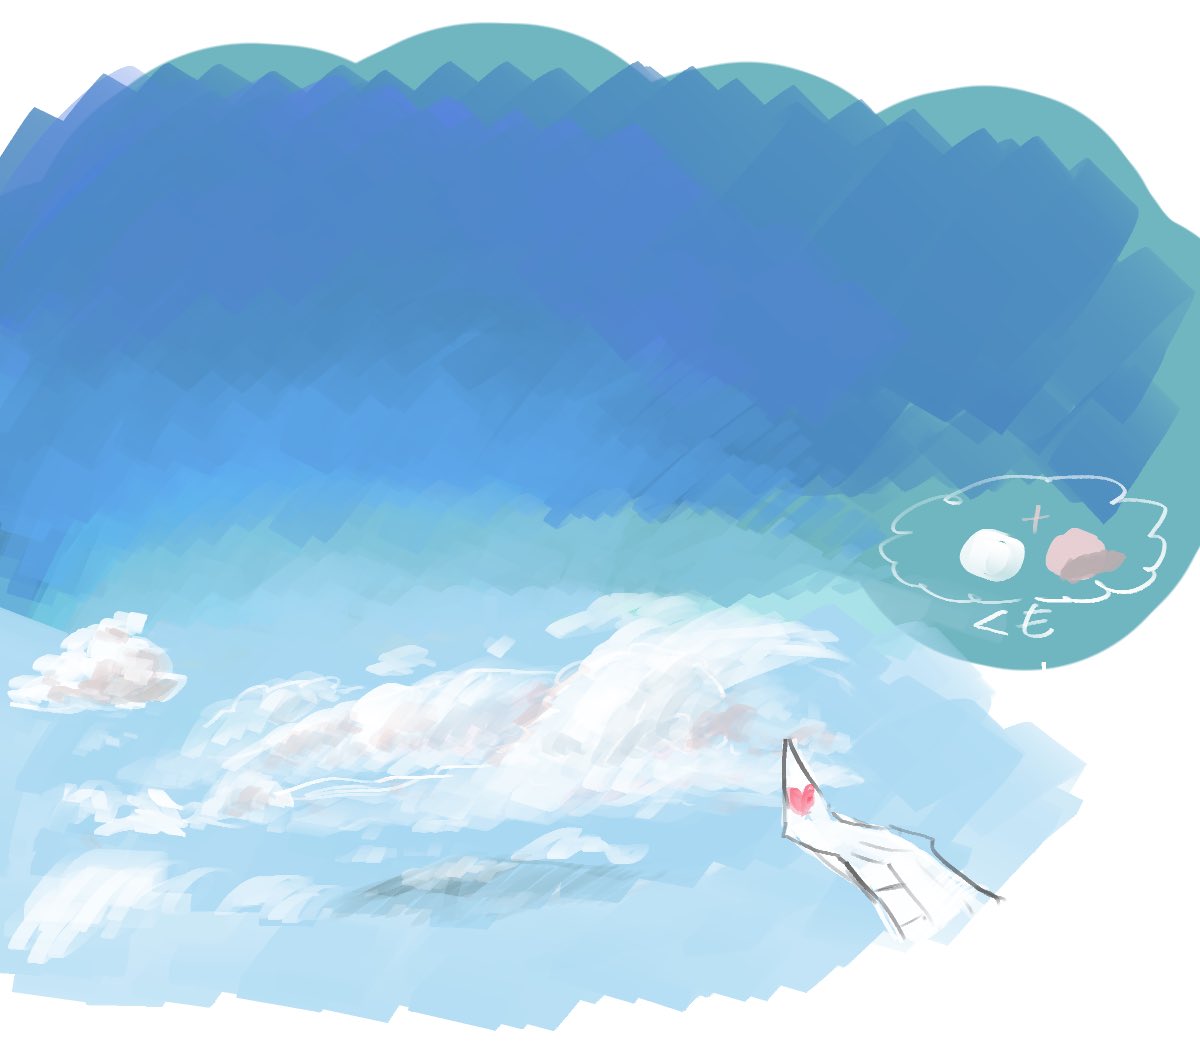 「今日見た雲を忘れたくなくて描いたやーつ 」|₂₄*のイラスト